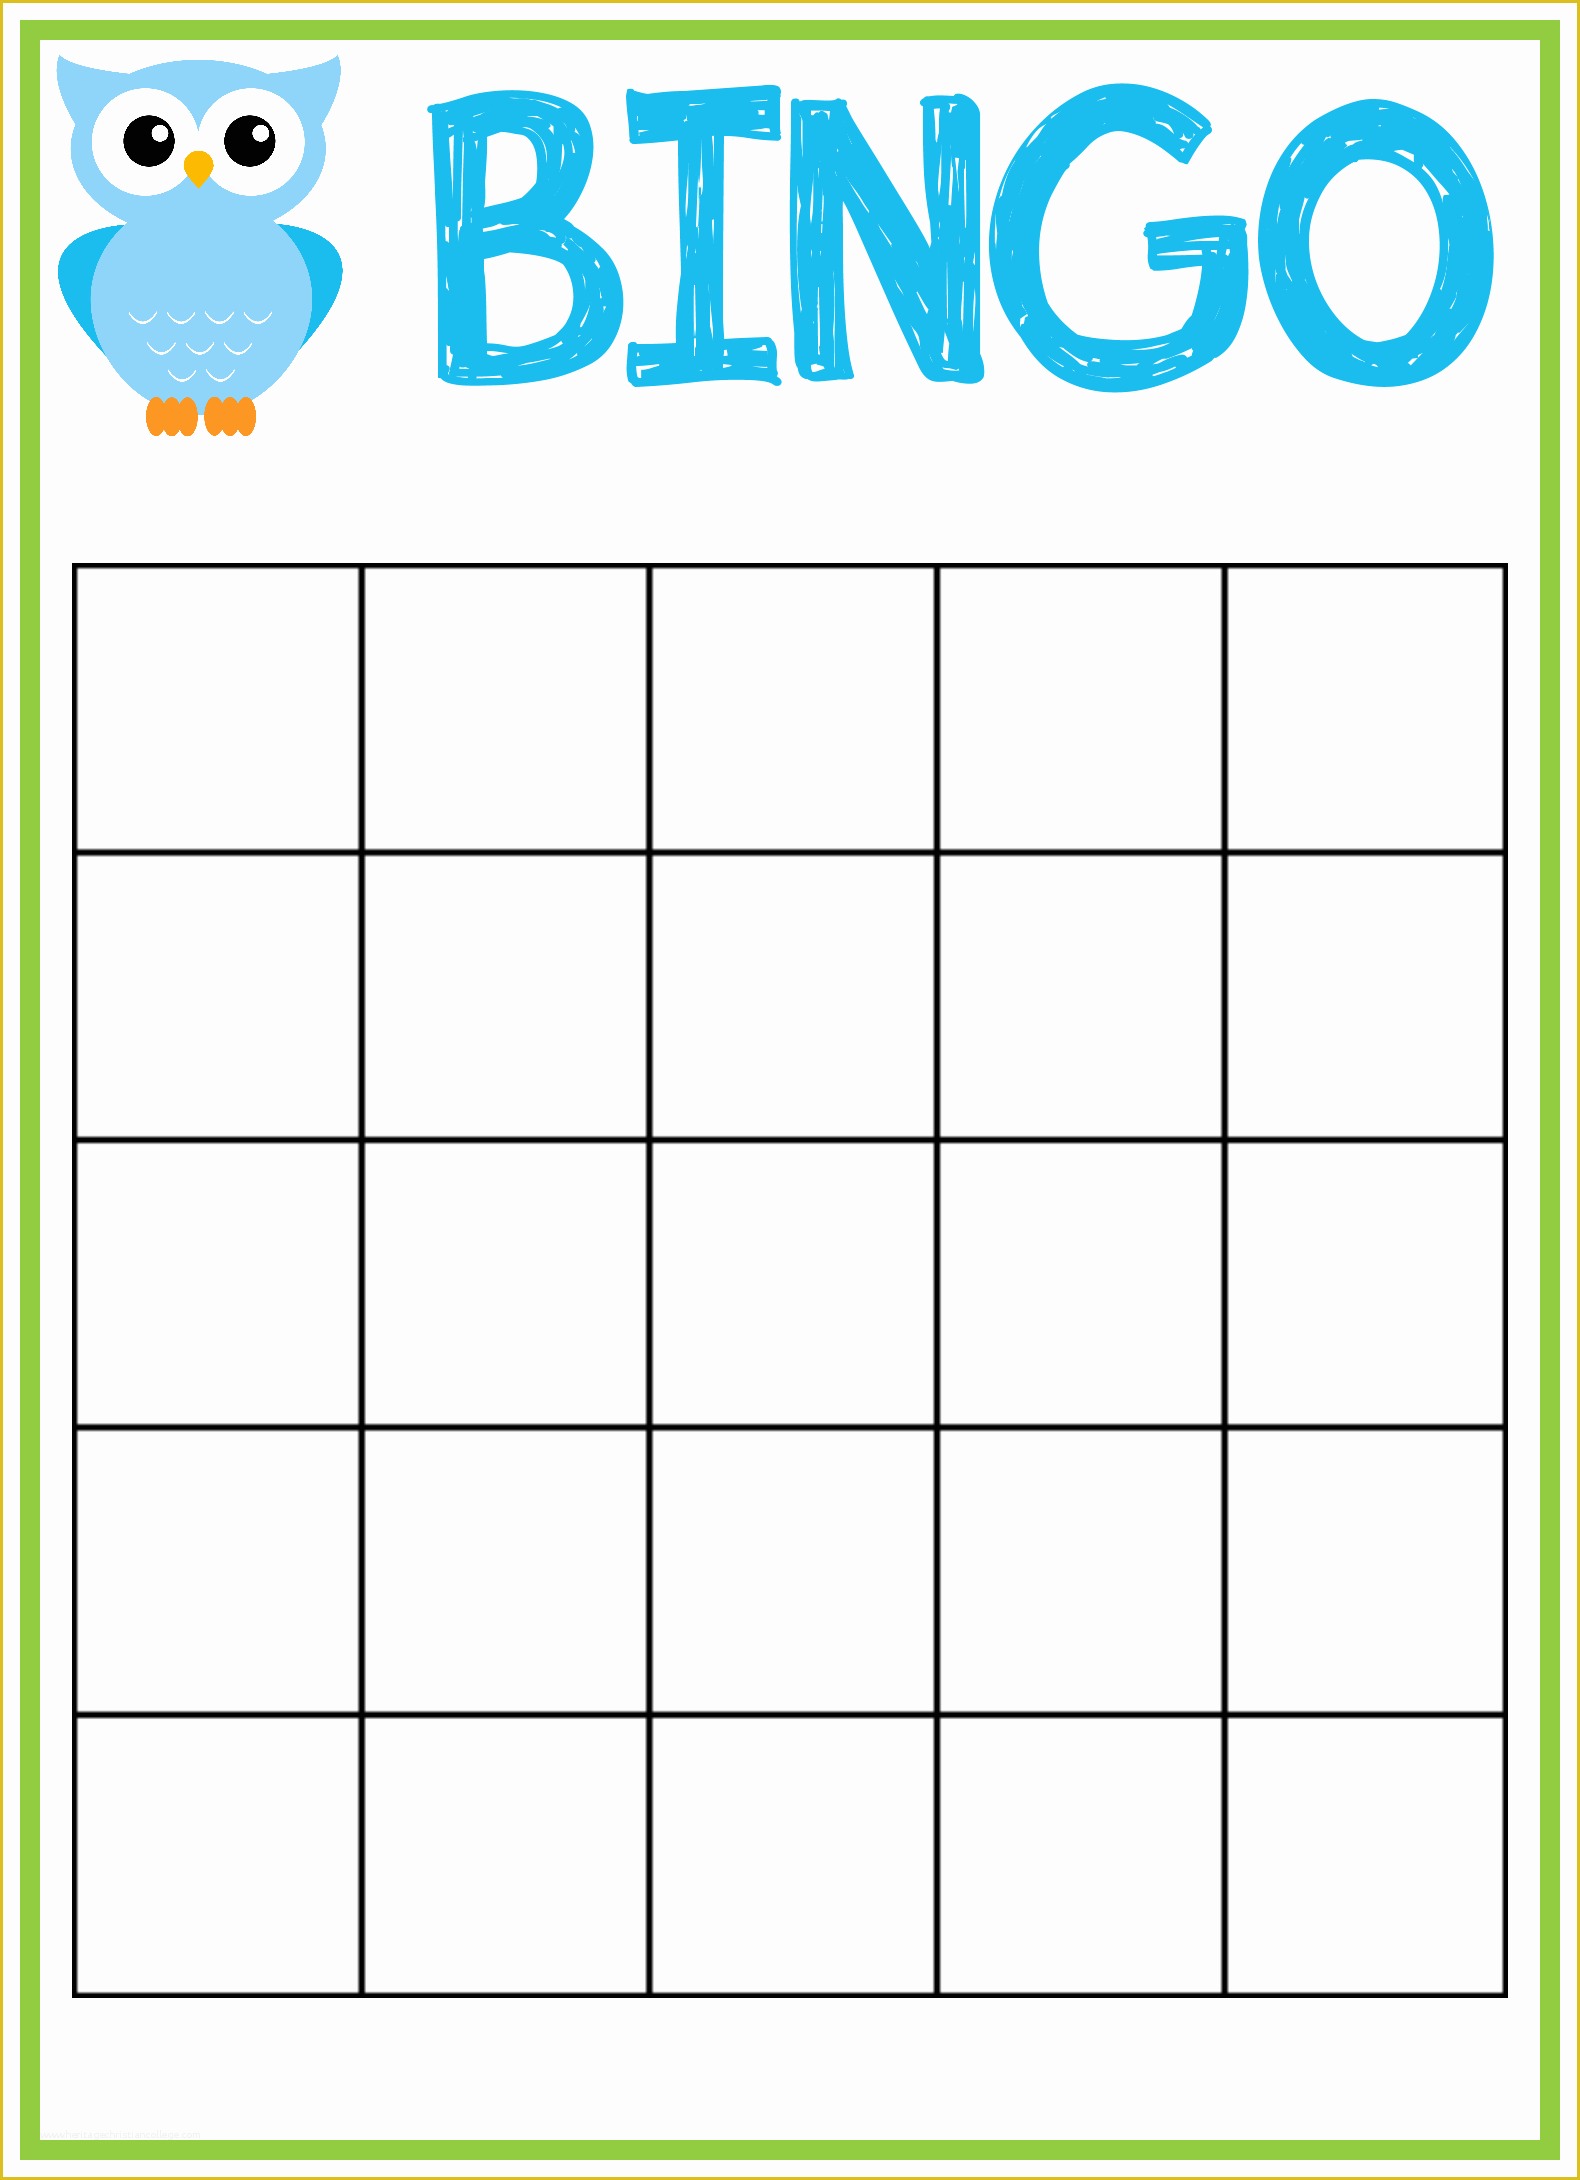 bingo-card-template-free-of-free-blank-bingo-card-template-bingocardprintout